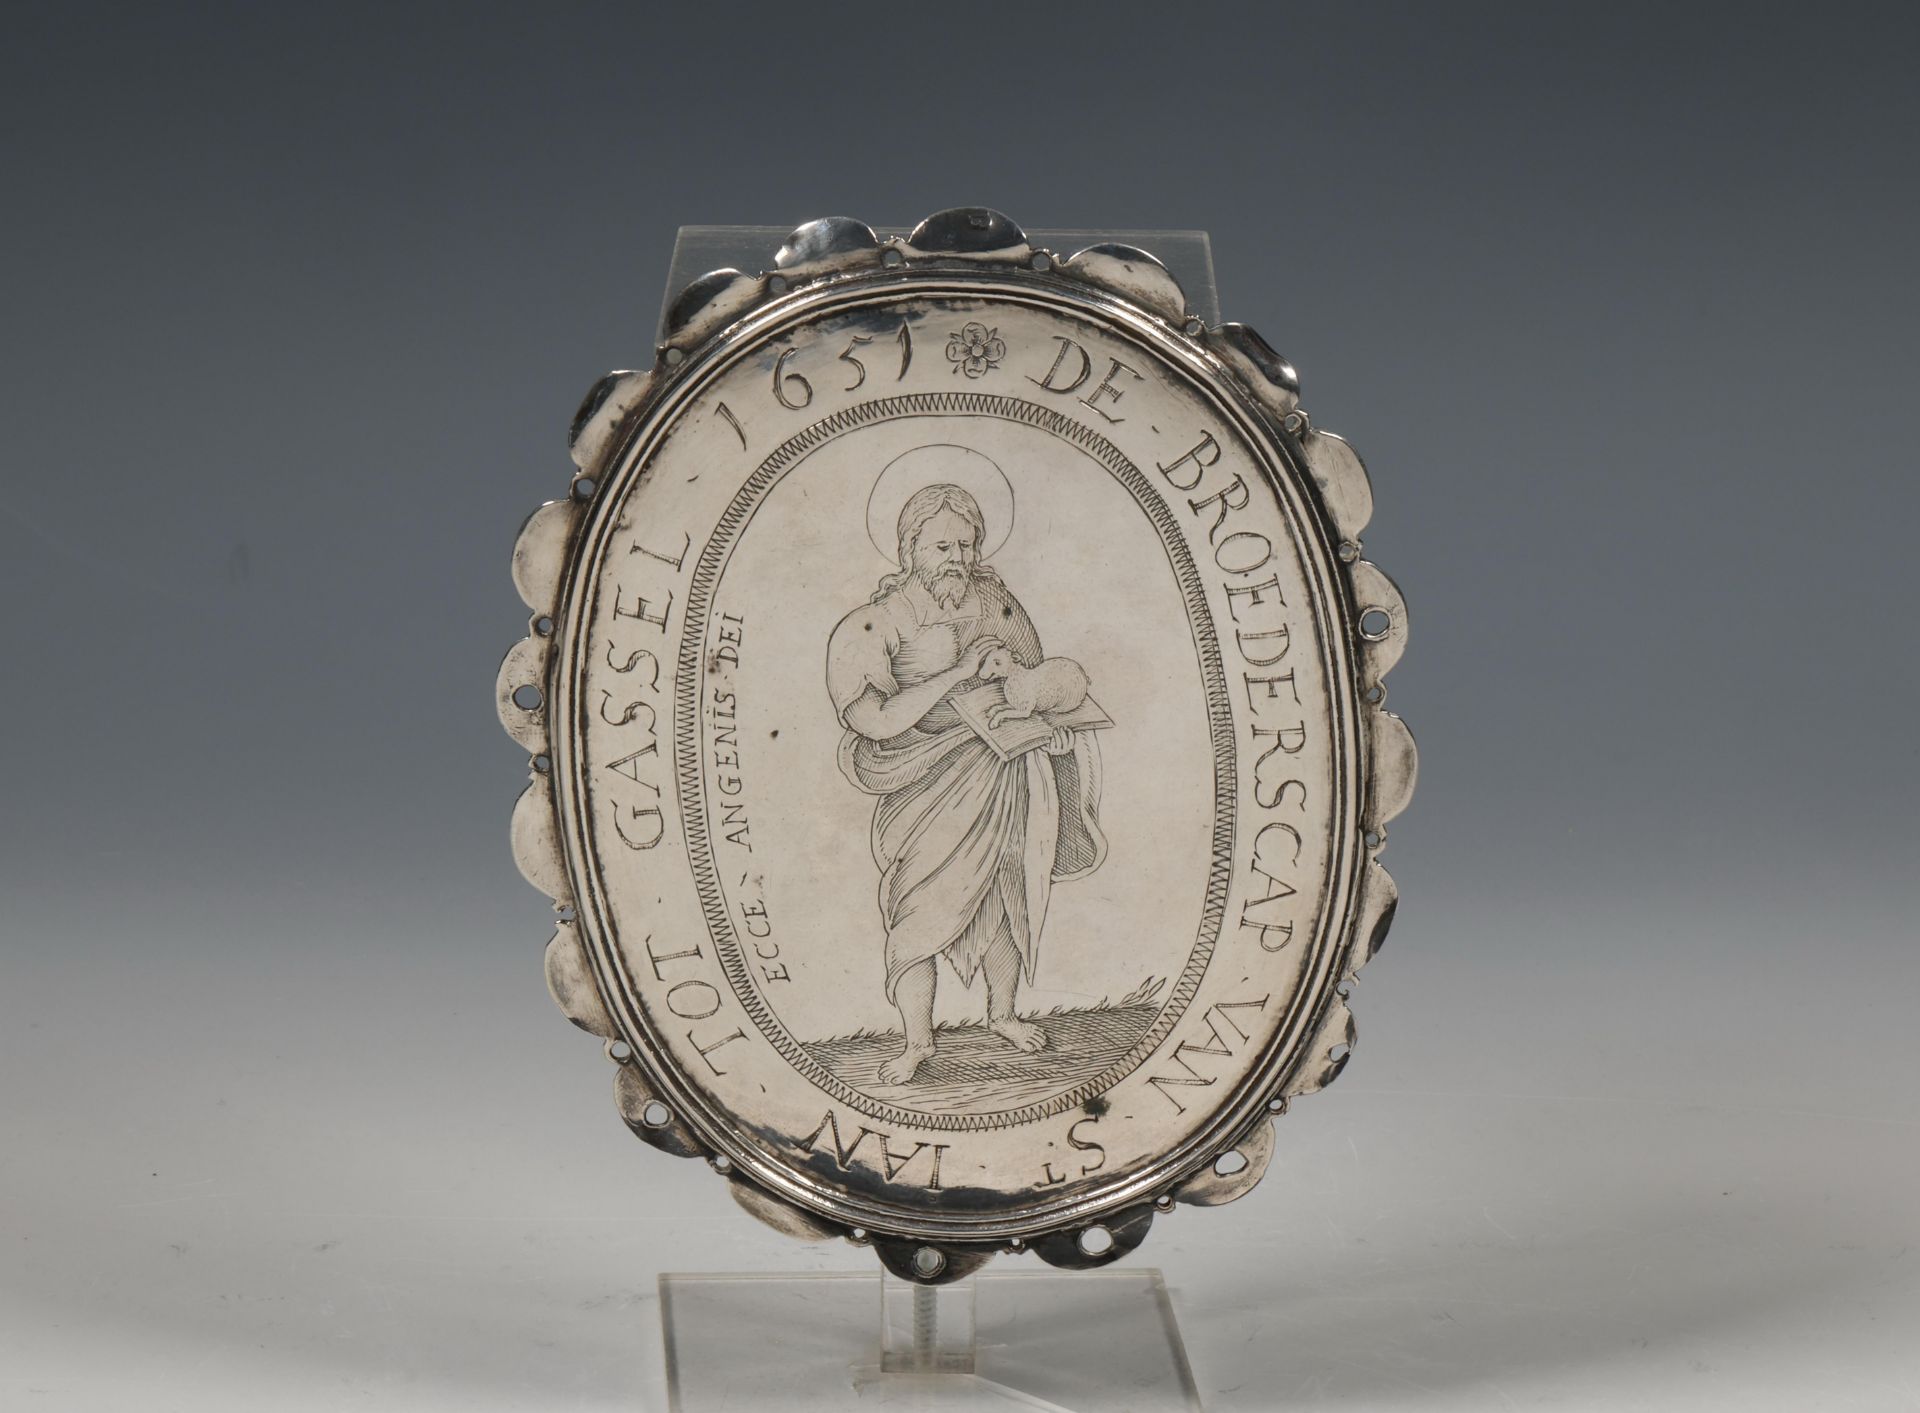 Ovale gilde plaquette, Broederschap van St. Jan Tot Gassel 1651 gedateerd,